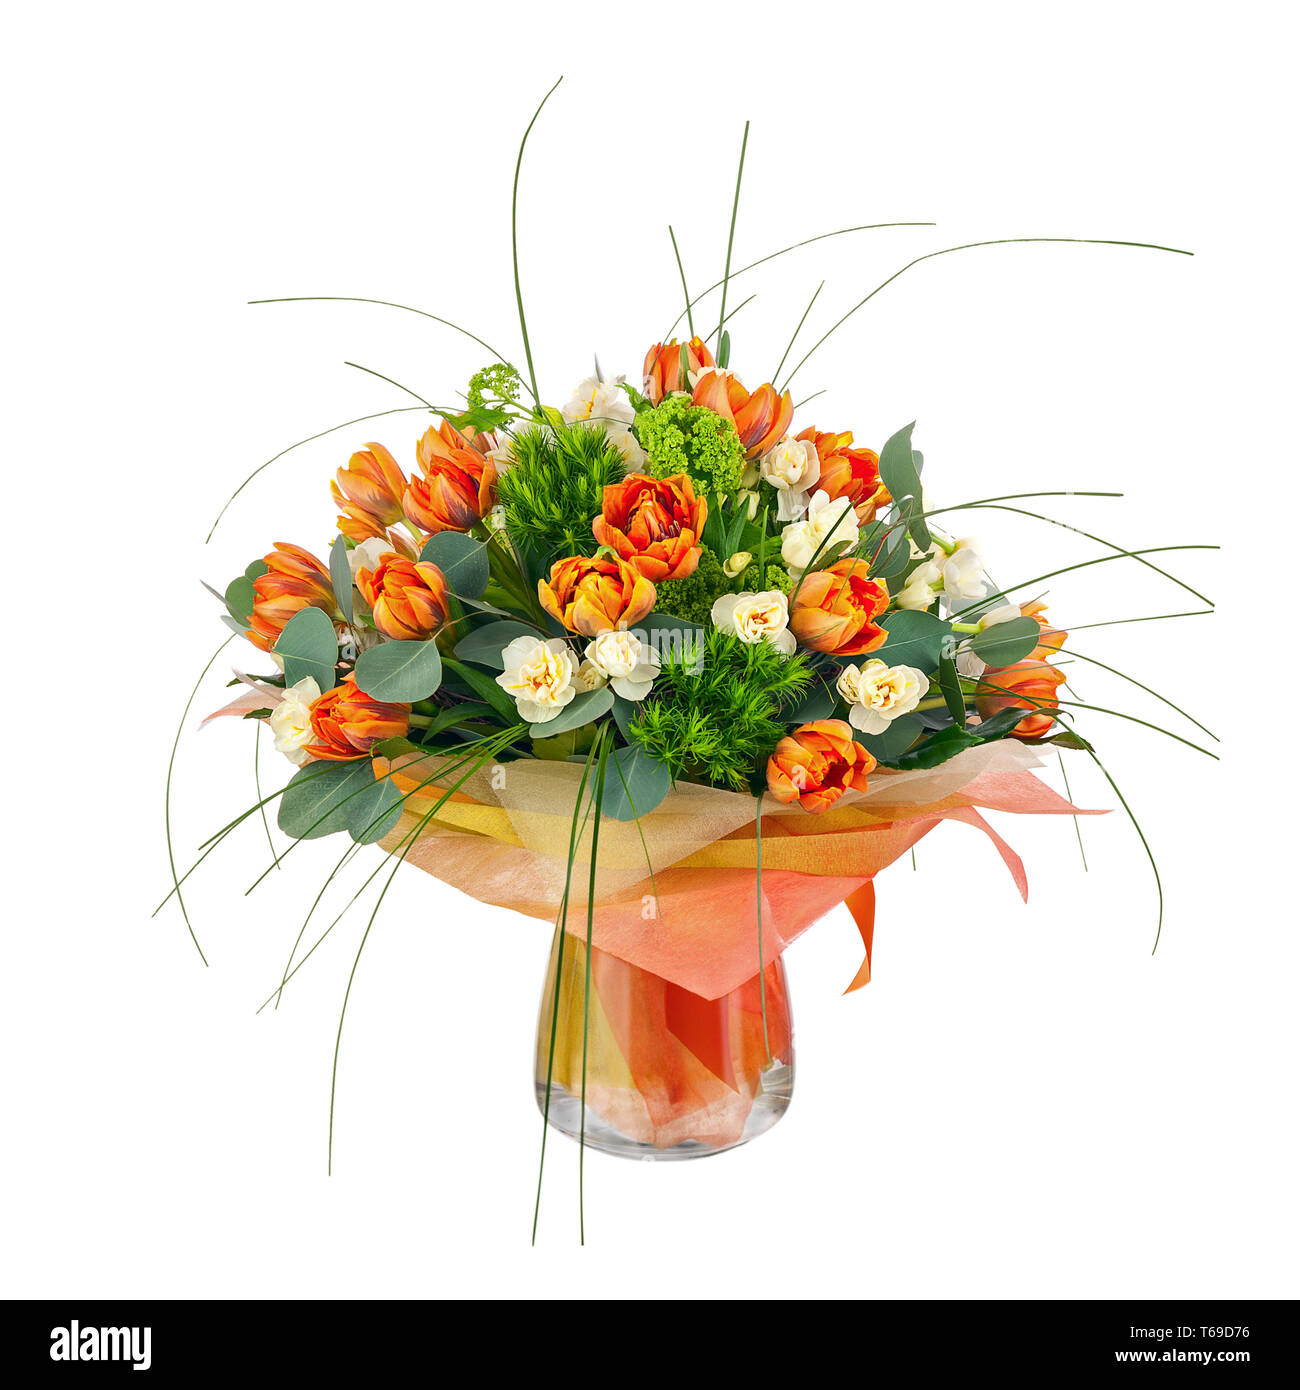 Bouquet de tulipes, narcisses et autres fleurs. Banque D'Images